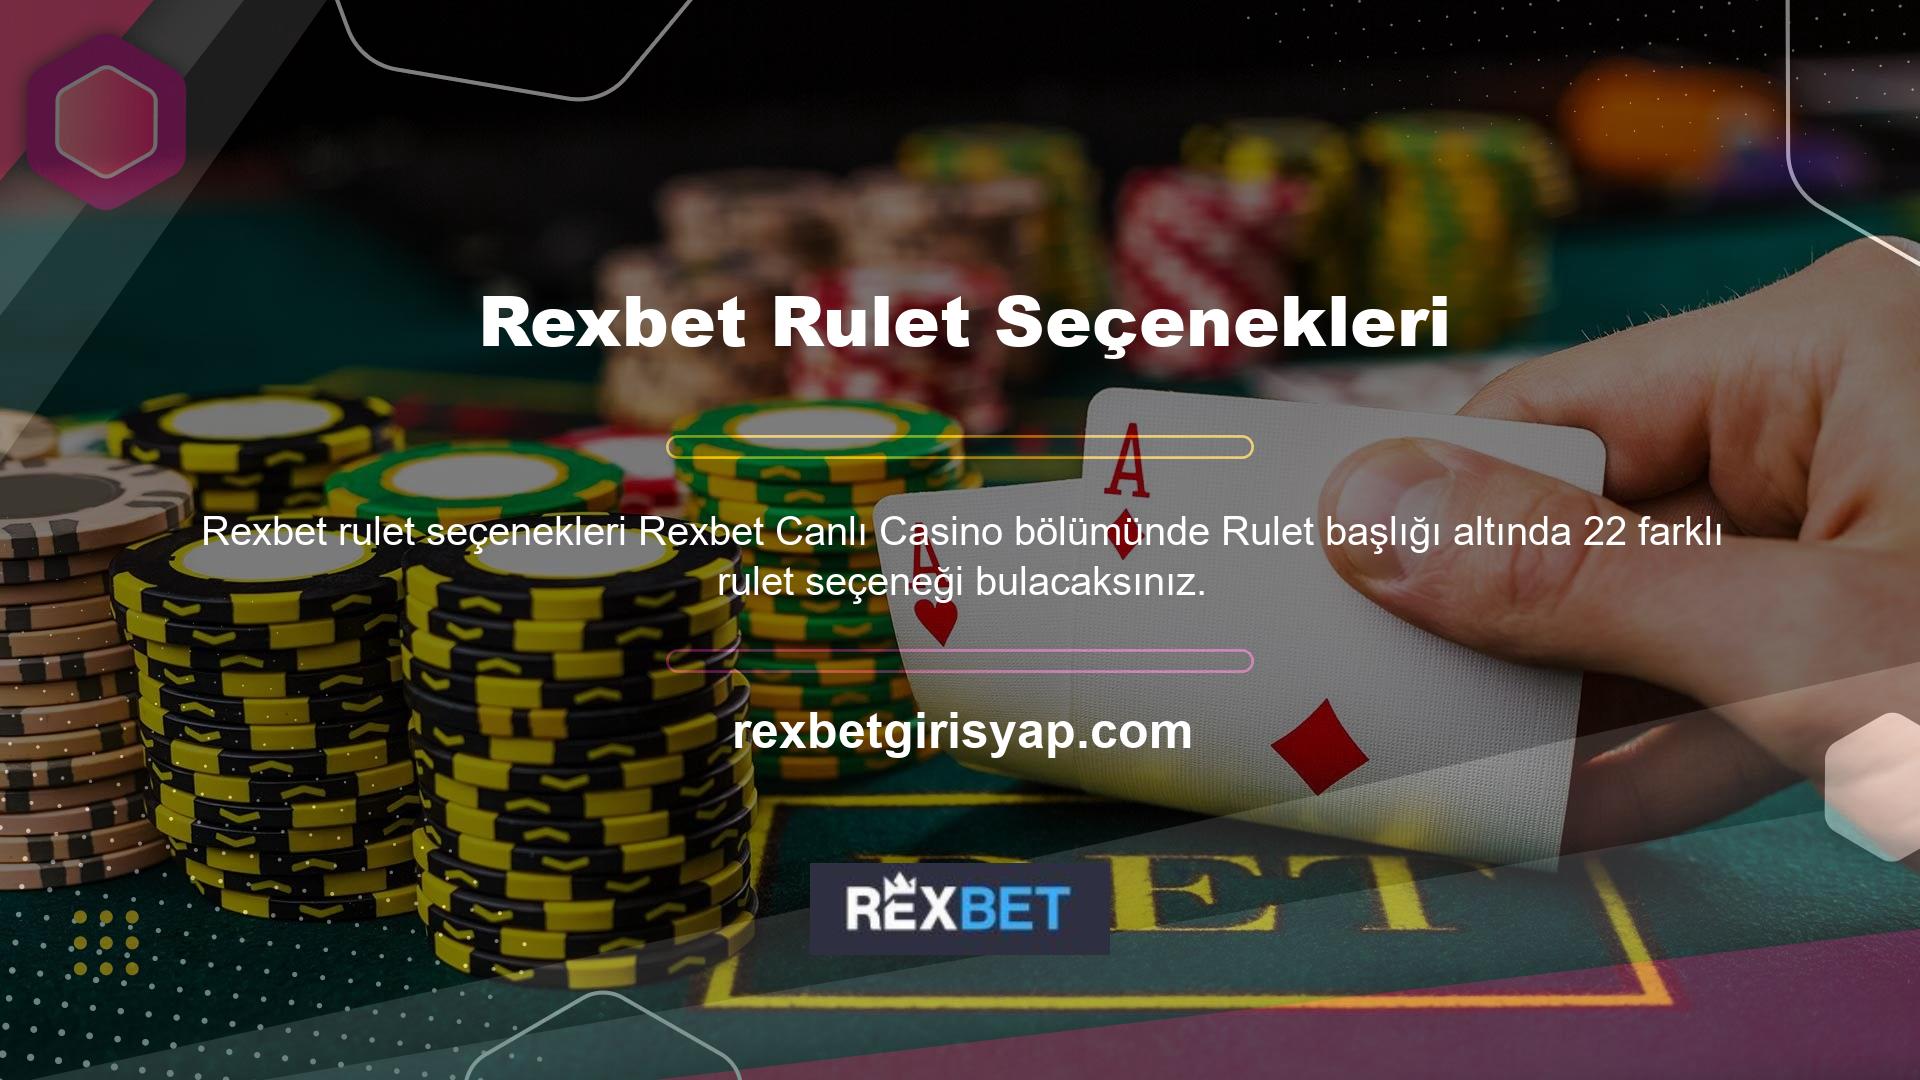 Rexbet bahis sitesi, oyun sağlayıcılarına yeni şirketler ekledikçe, oyun seçeneklerinin sayısı da değişmektedir